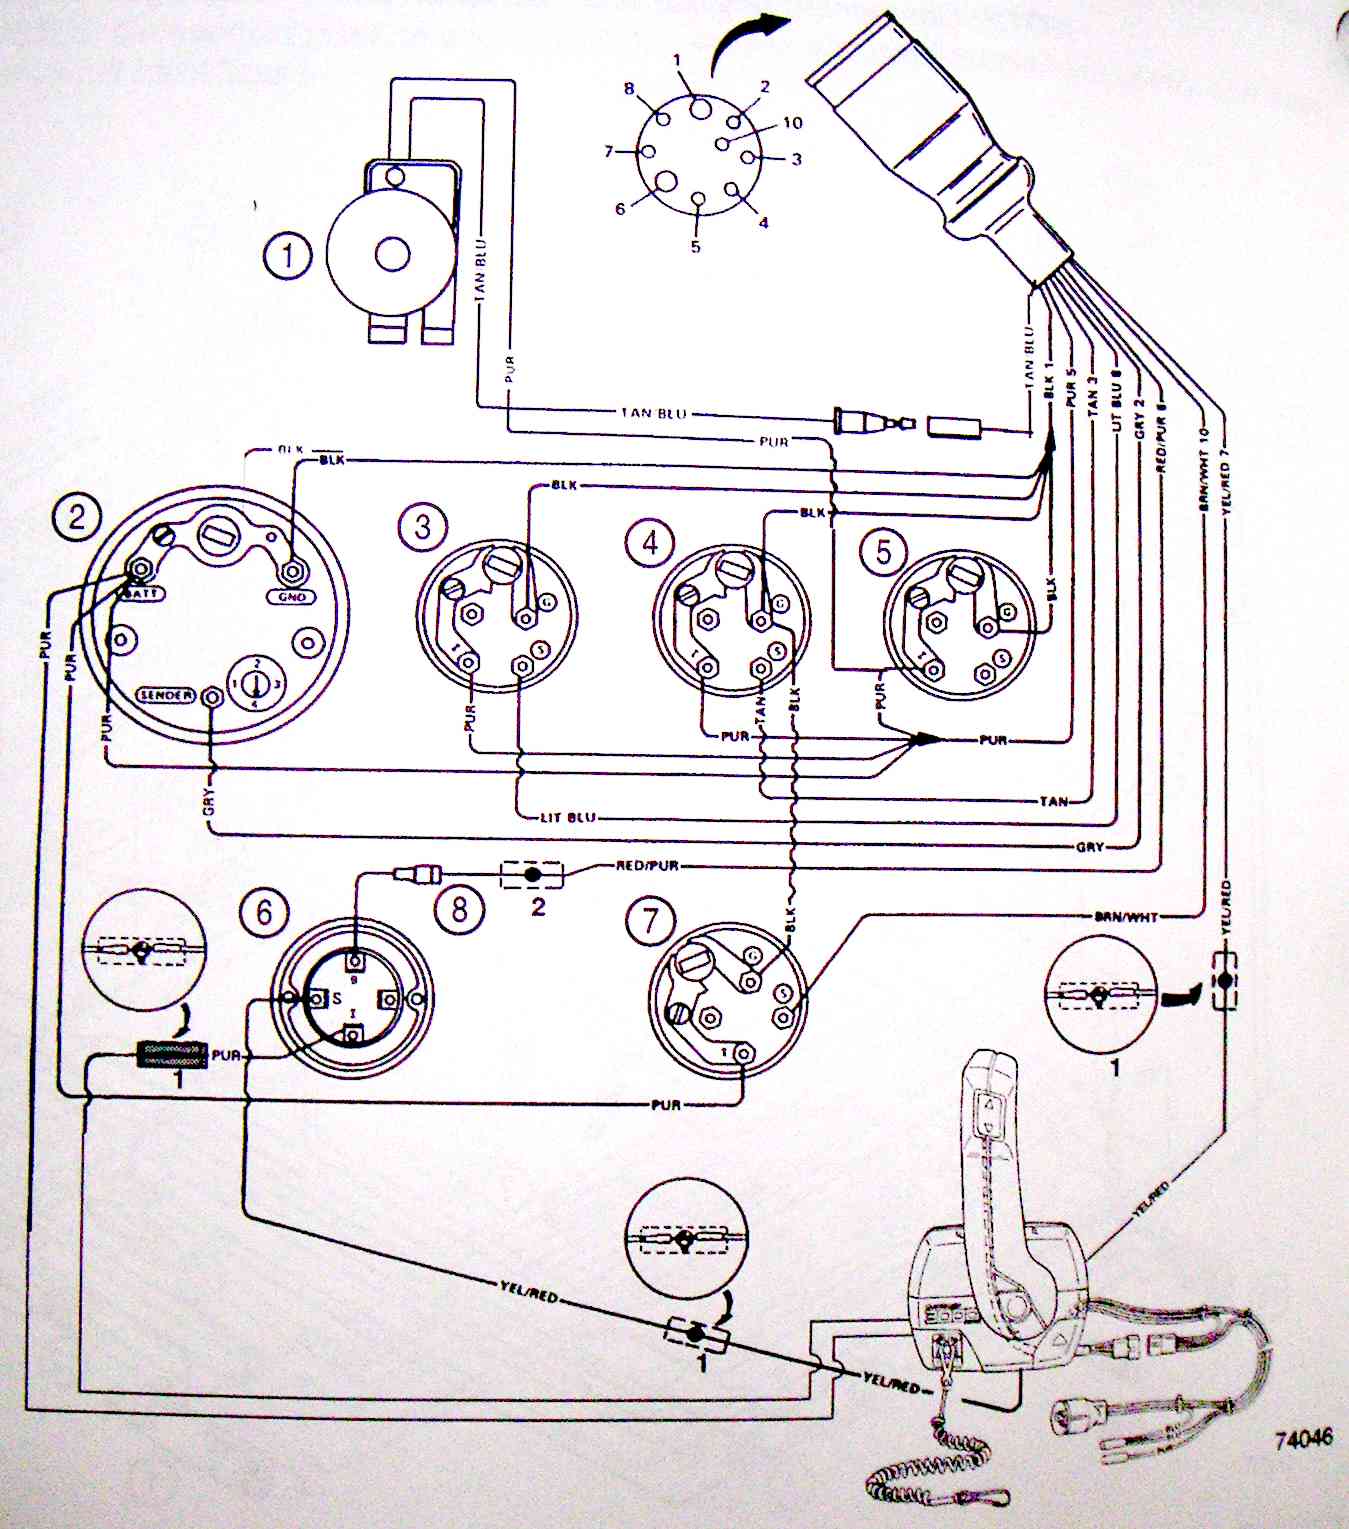 Crownline boat wiring diagram Idea